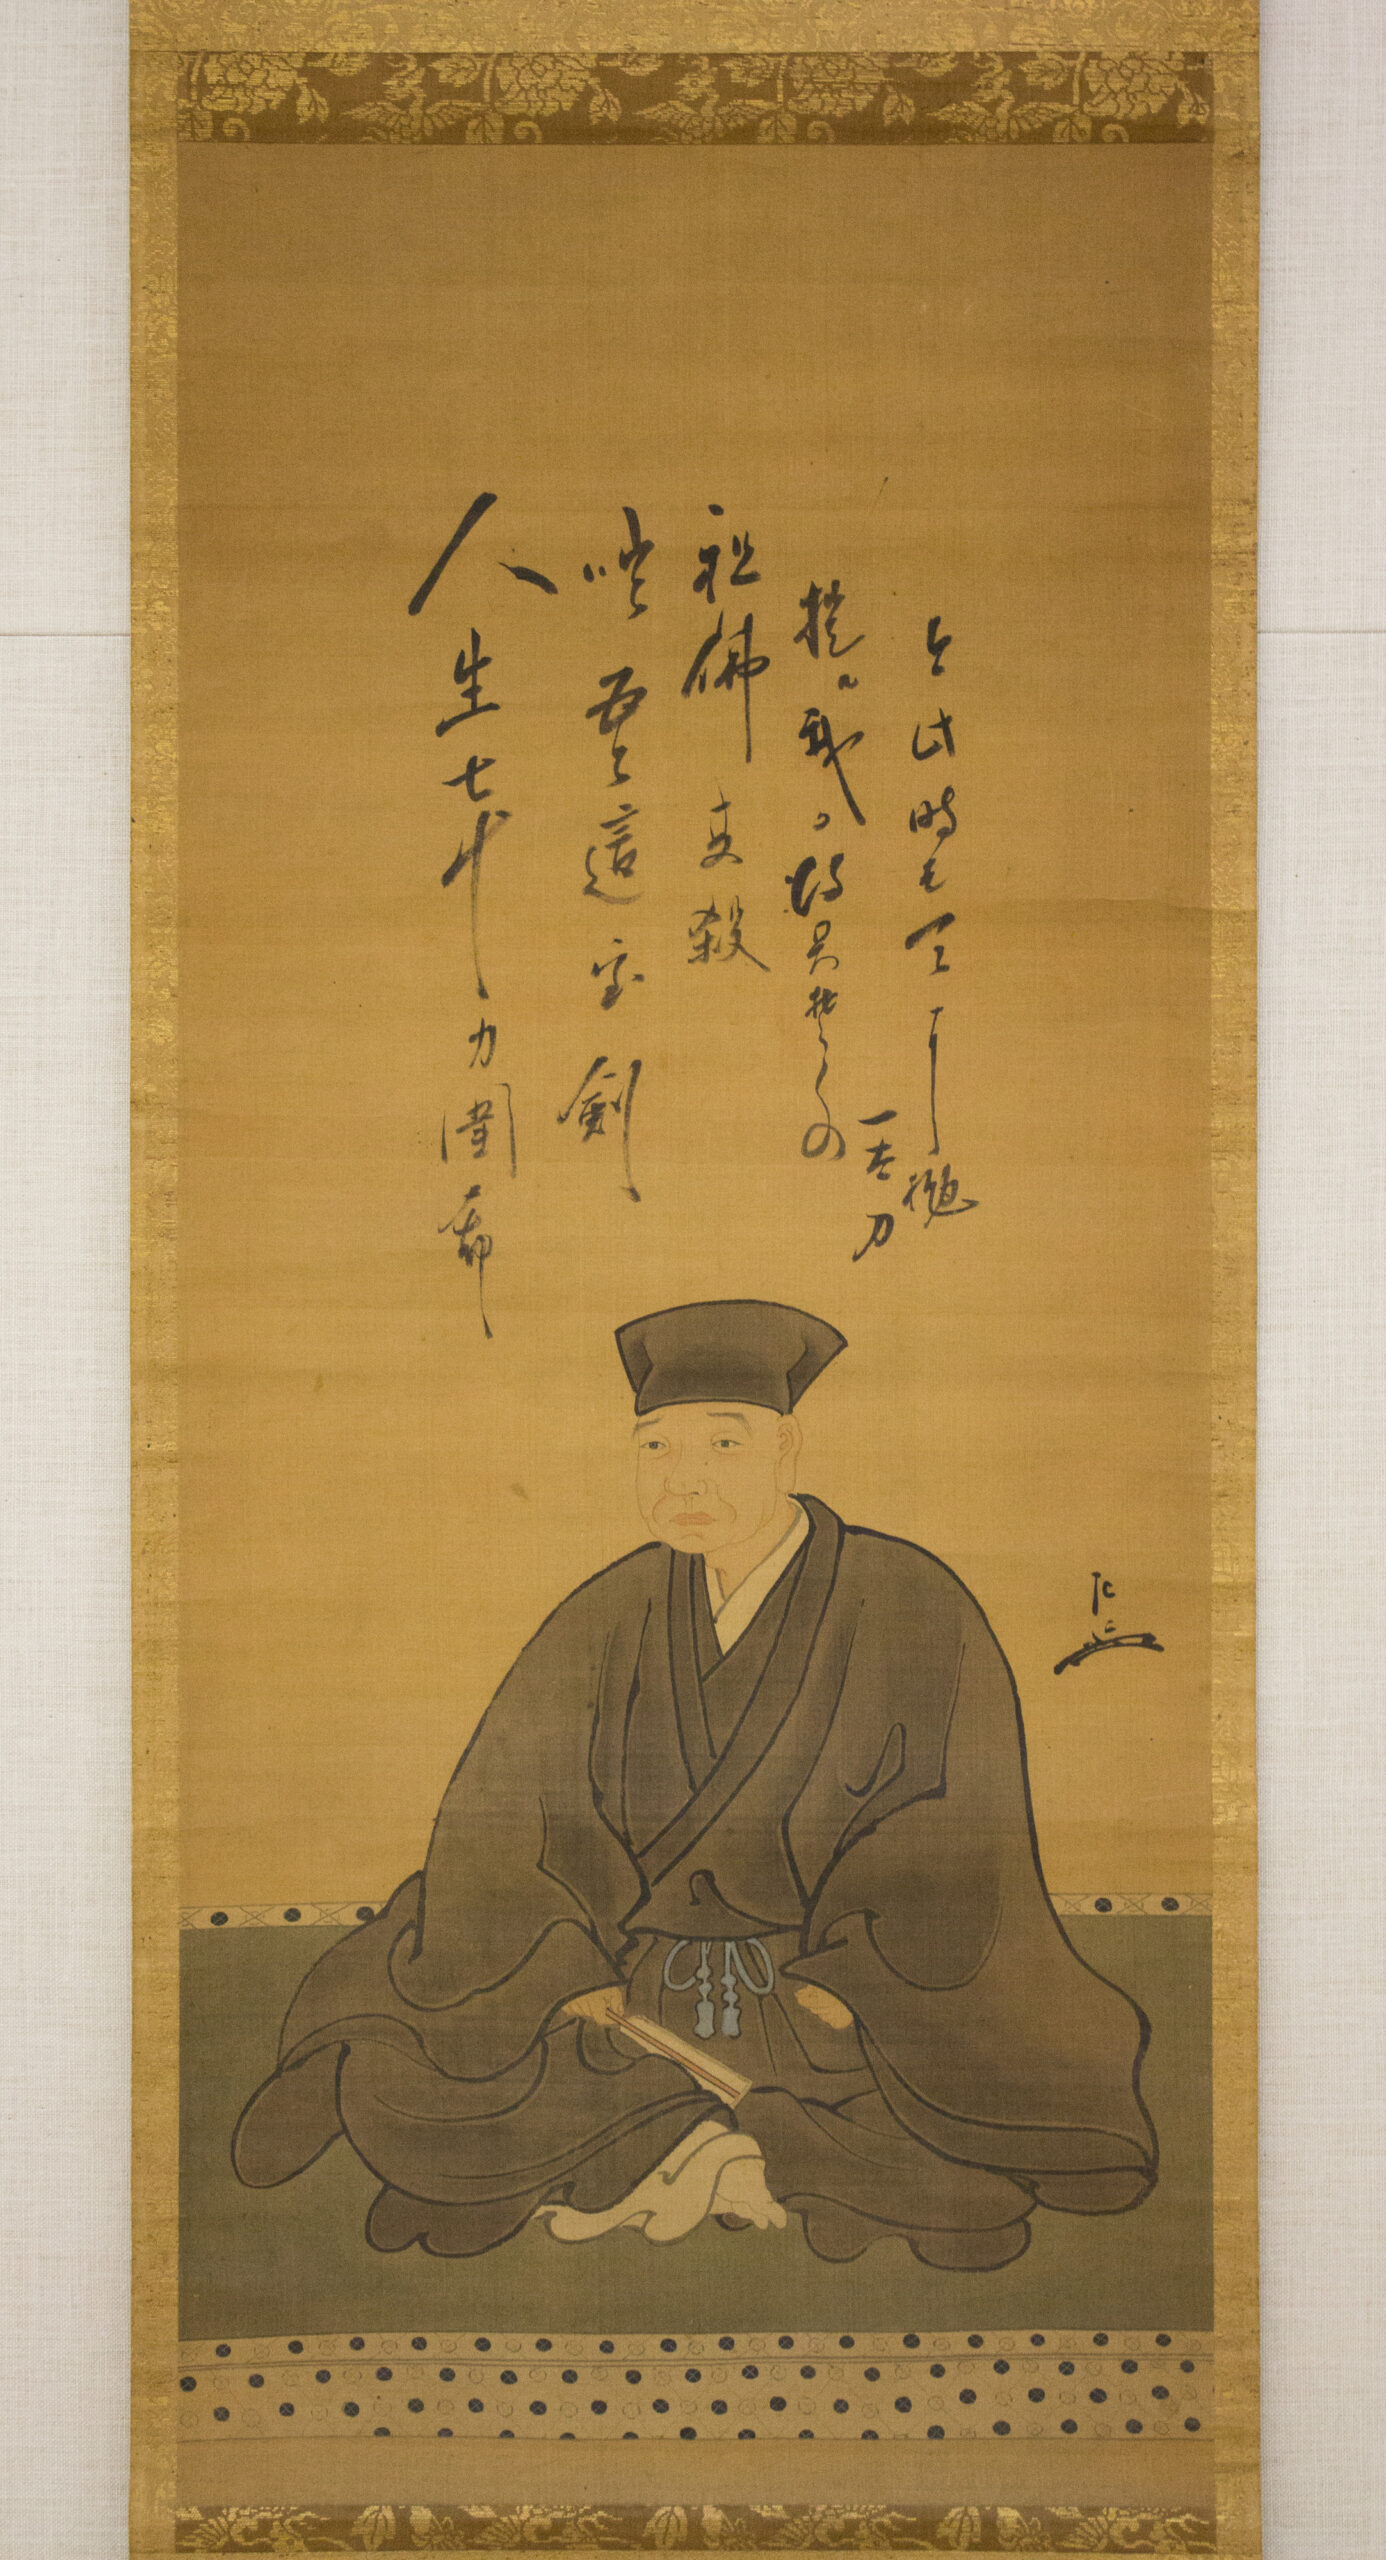 Picture of Sen no Rikyū.